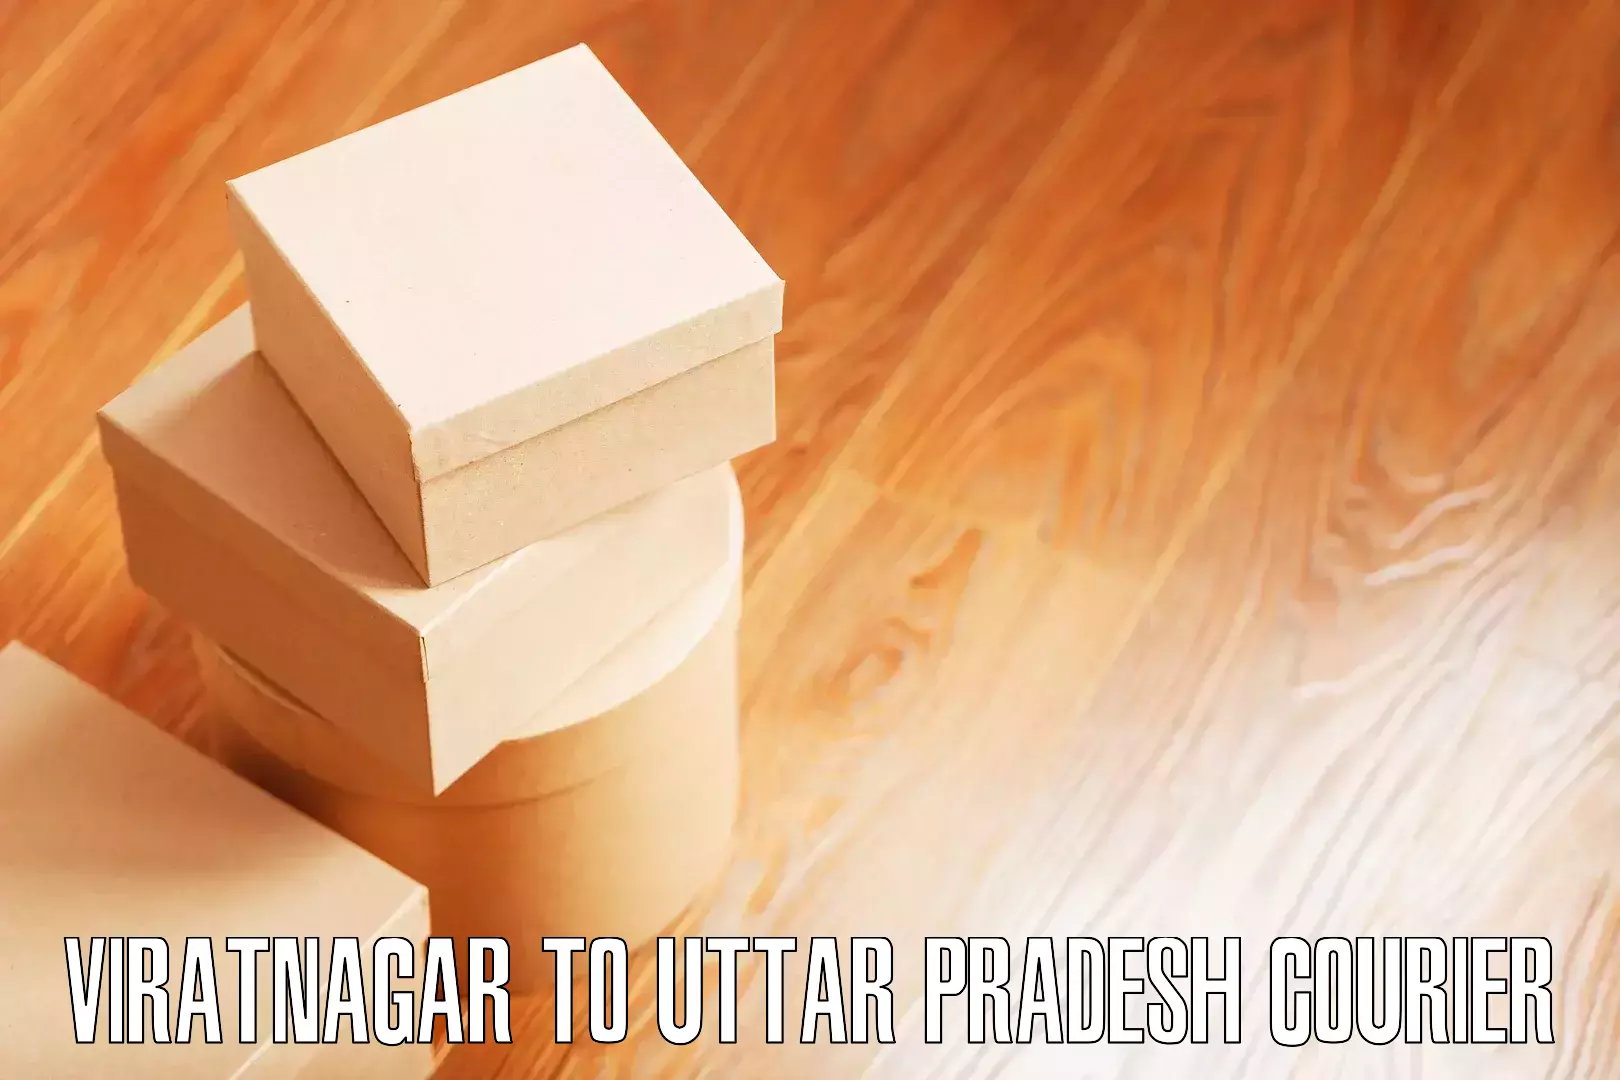 Affordable relocation solutions Viratnagar to Uttar Pradesh